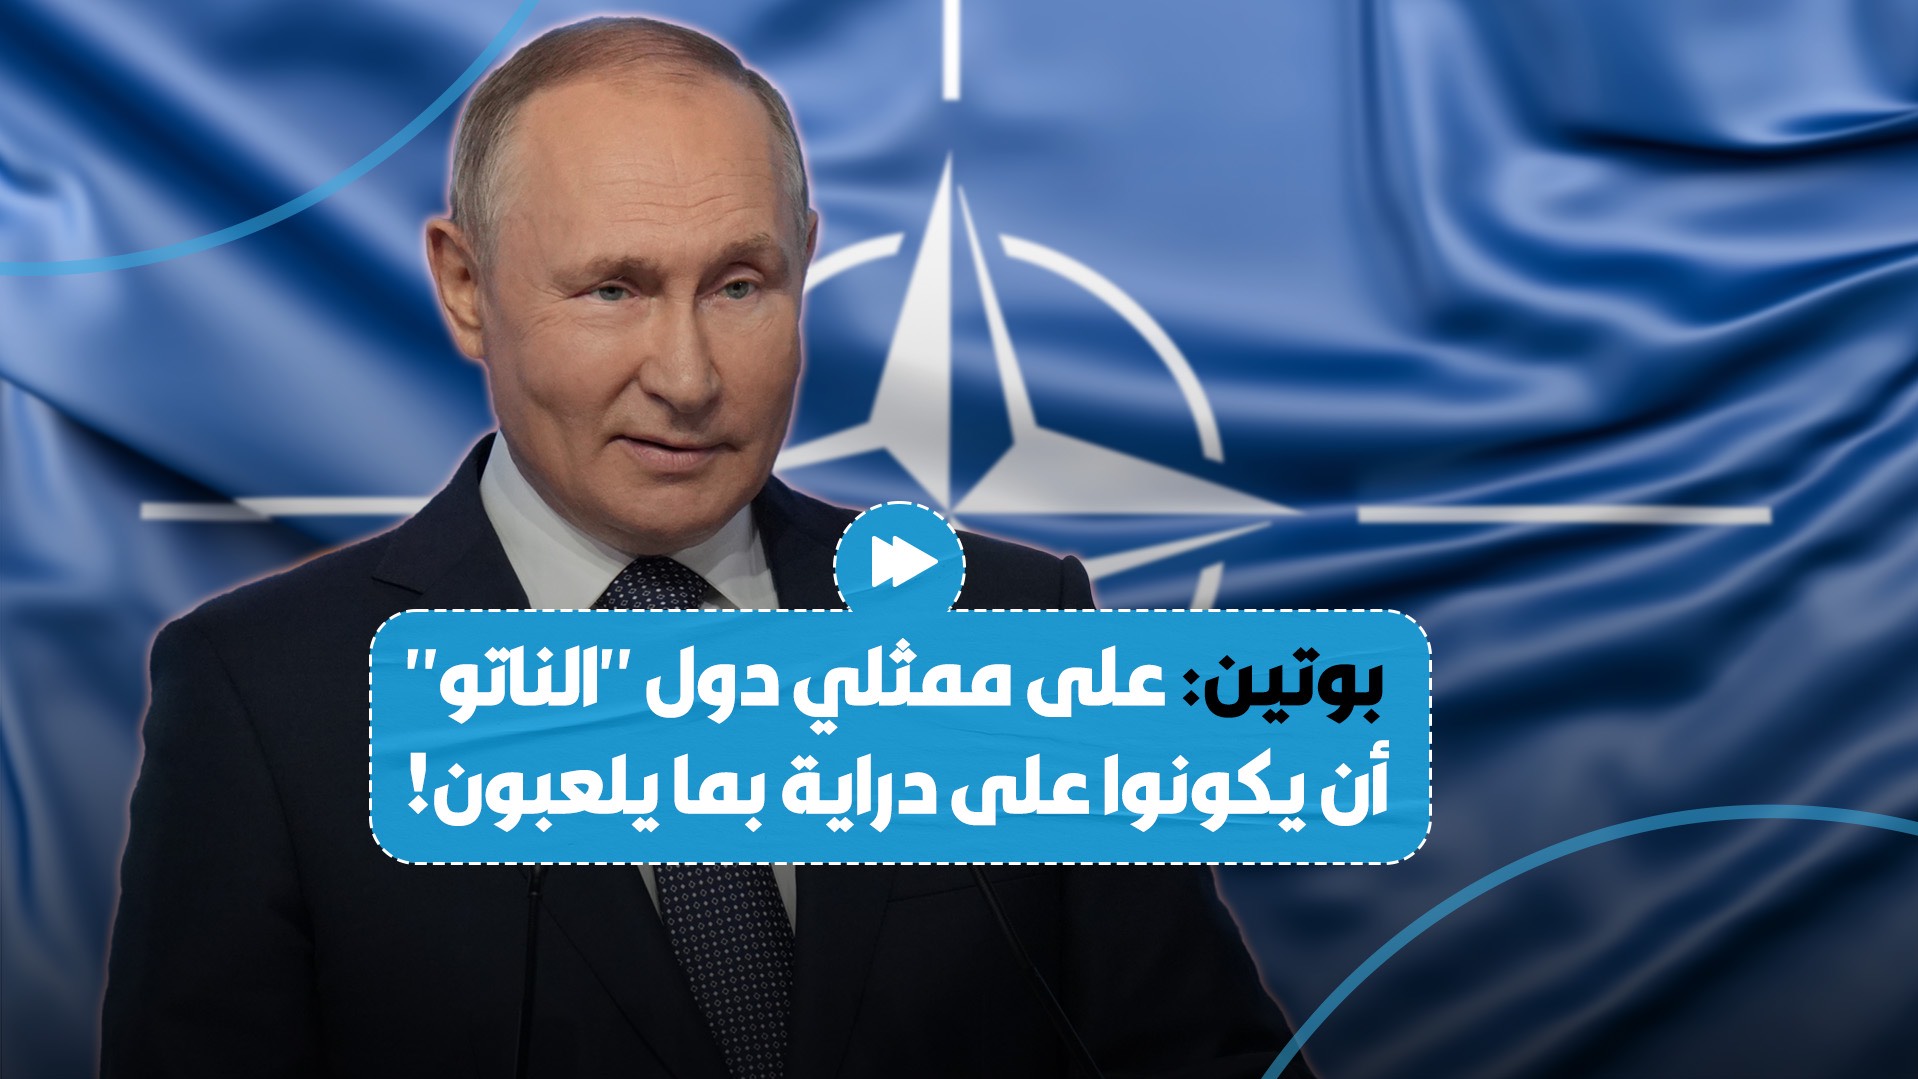 بوتين يعلّق على تصريحات مسؤولي "الناتو" حول إمكانية السماح لكييف بضرب روسيا باستخدام أسلحتهم